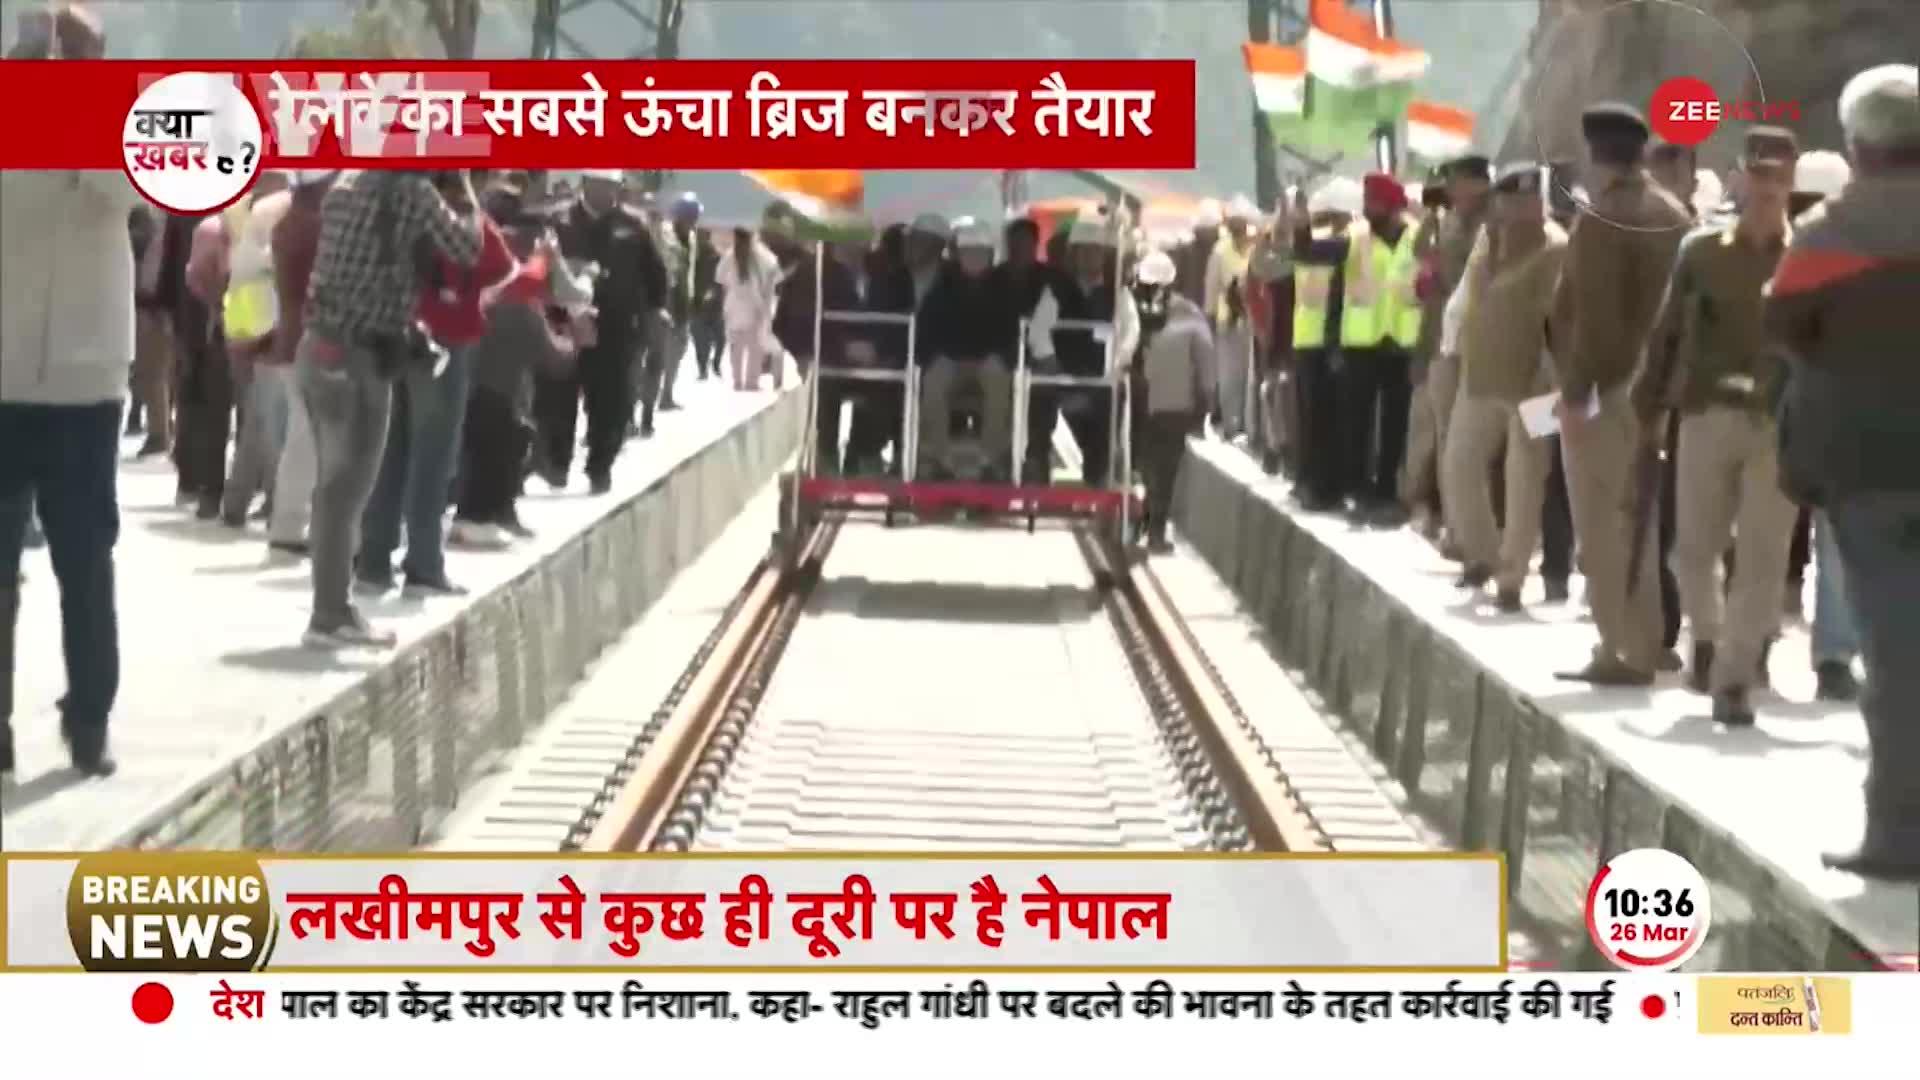 Indian Railways: रेलवे का सबसे ऊंचा ब्रिज बनकर तैयार, 473 मीटर ऊँचा है रियासी में बना ब्रिज